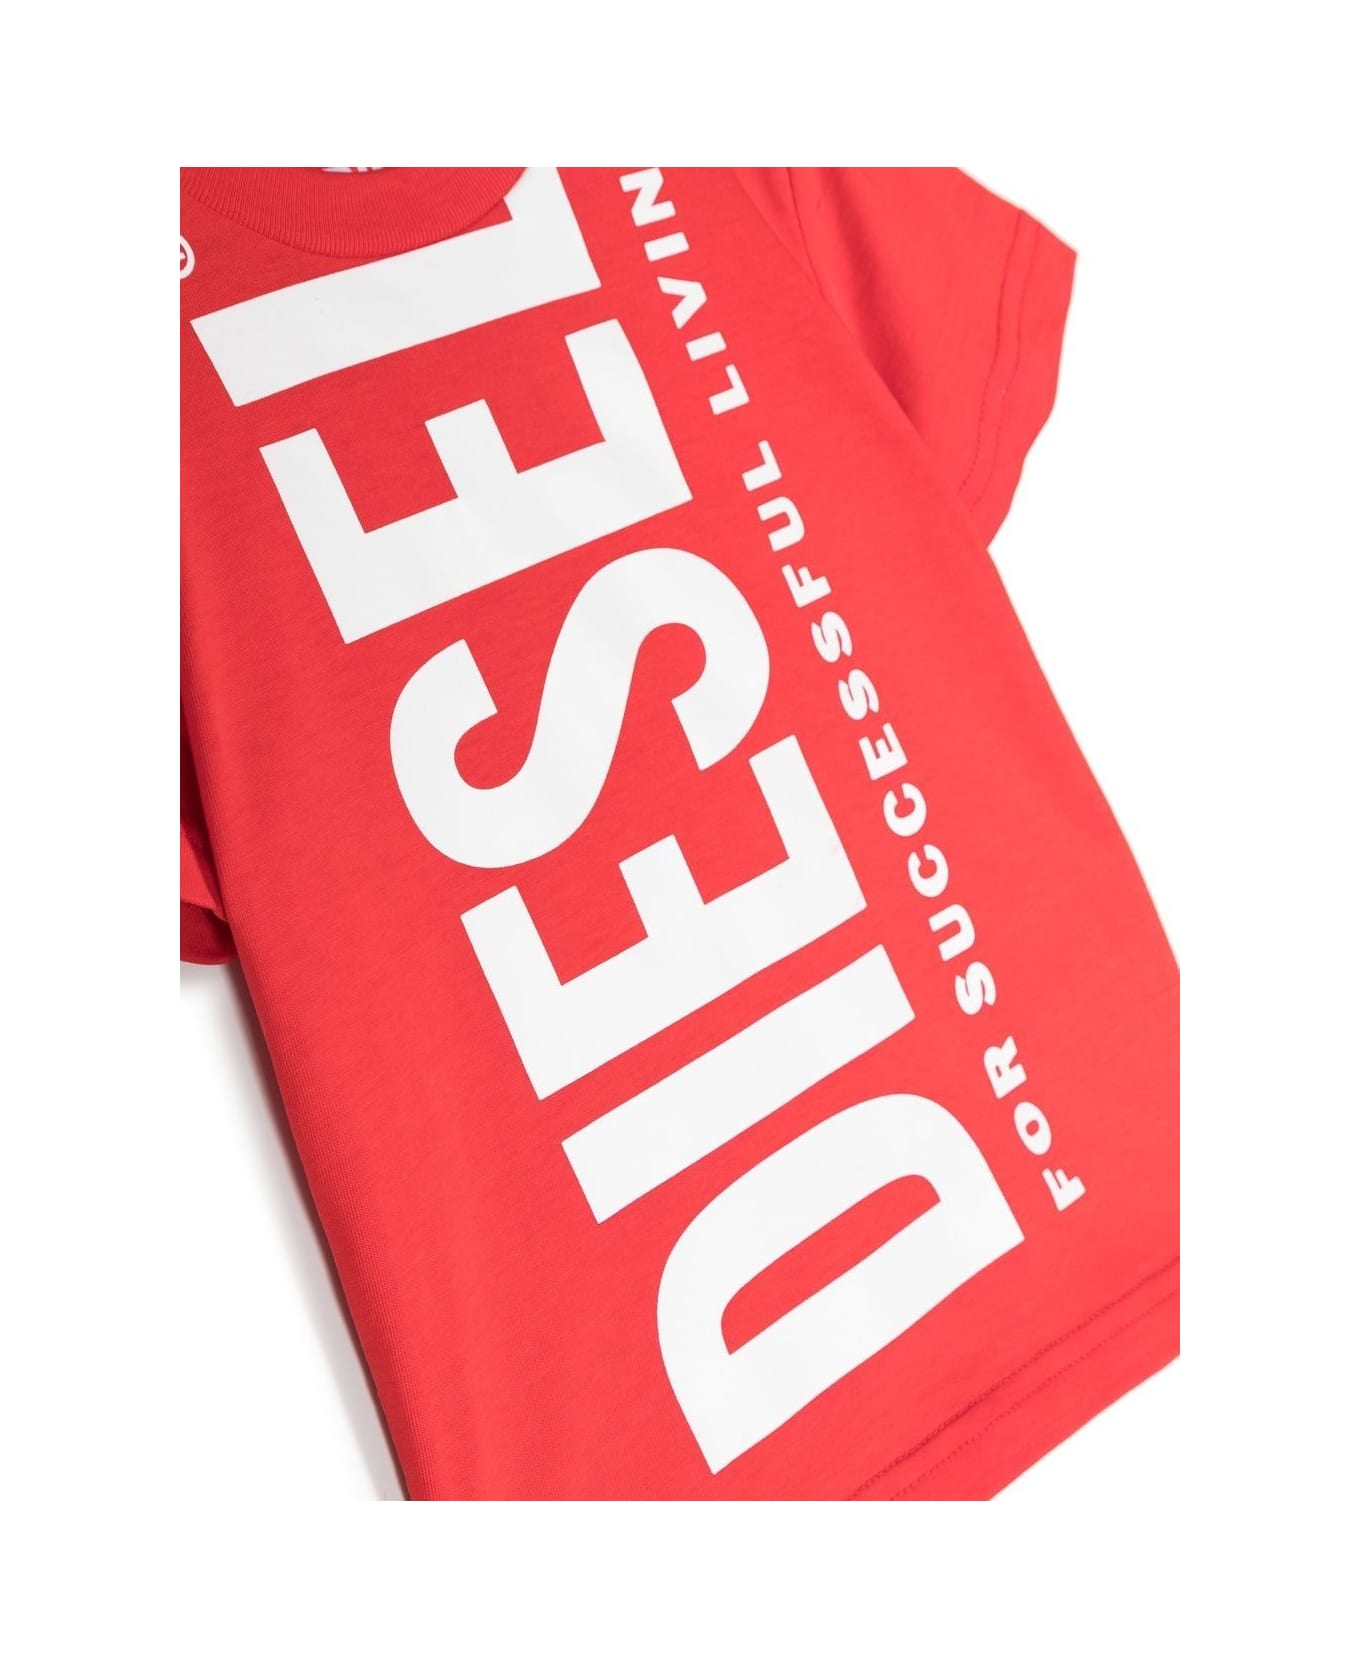 Diesel Printed T-shirt - Red